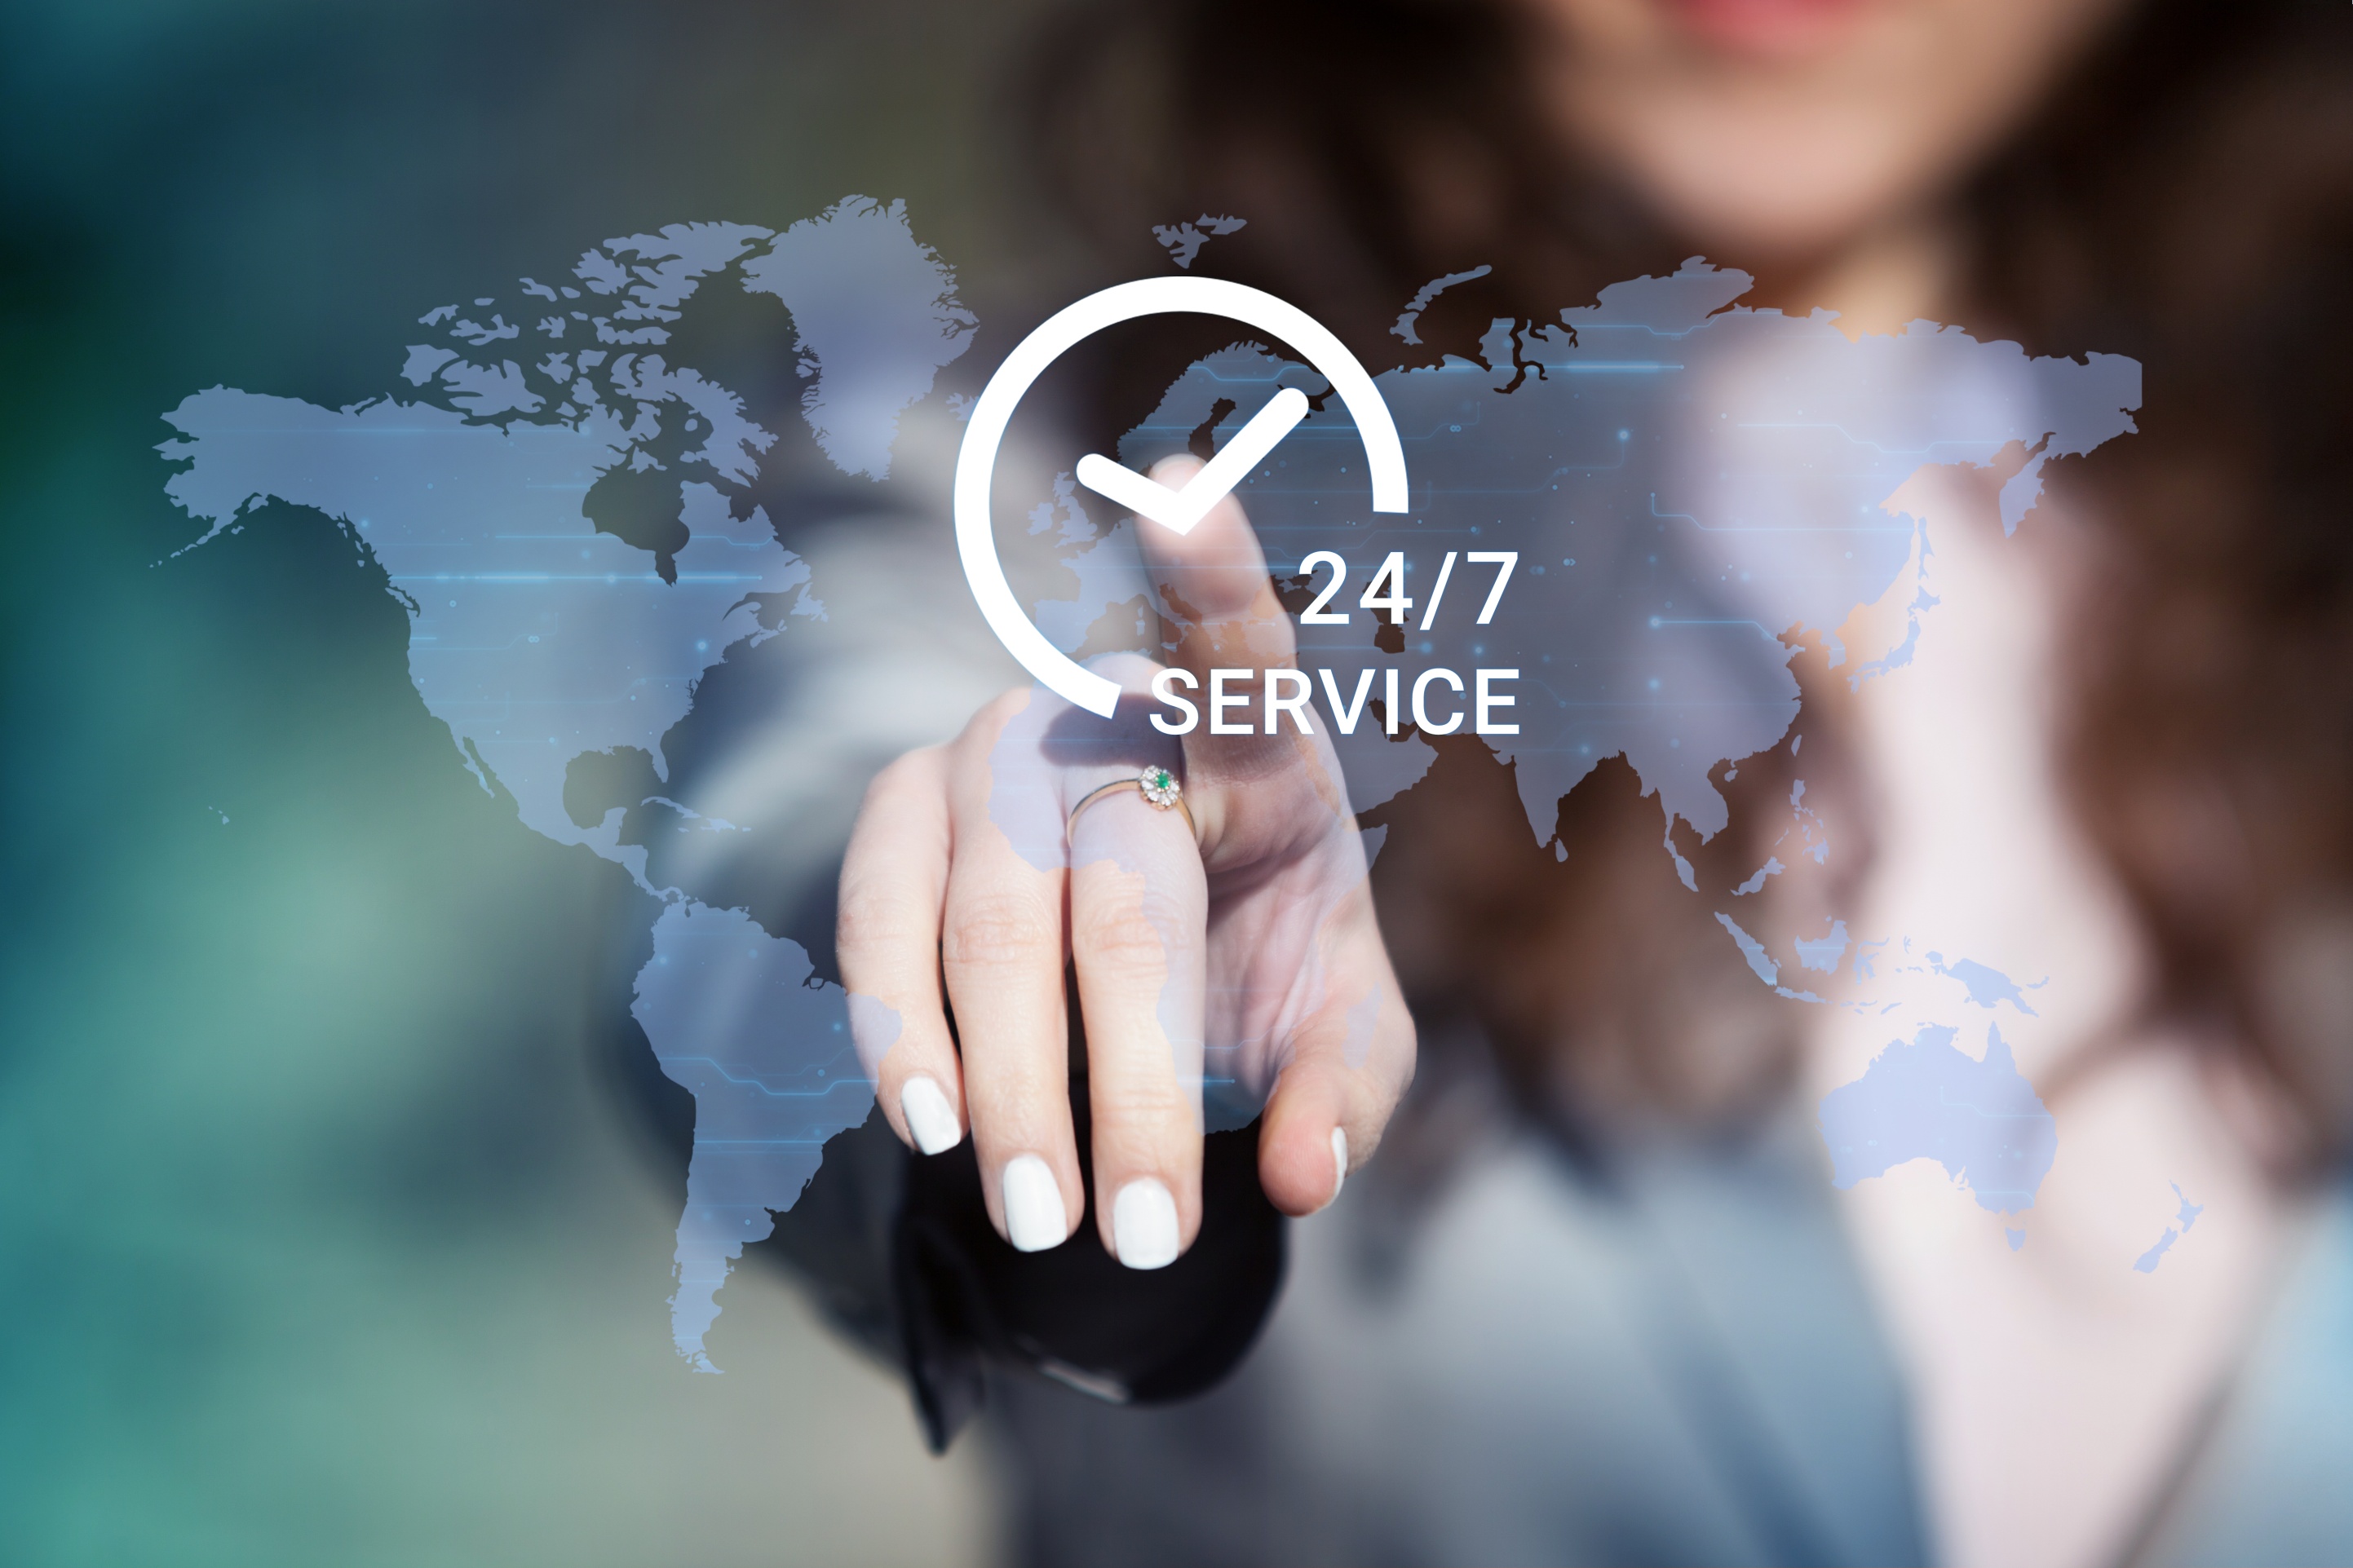 Supporting service com. Поддержка 24/7. Service support. Круглосуточная техническая поддержка. Картинка 24 на 7 сервис.